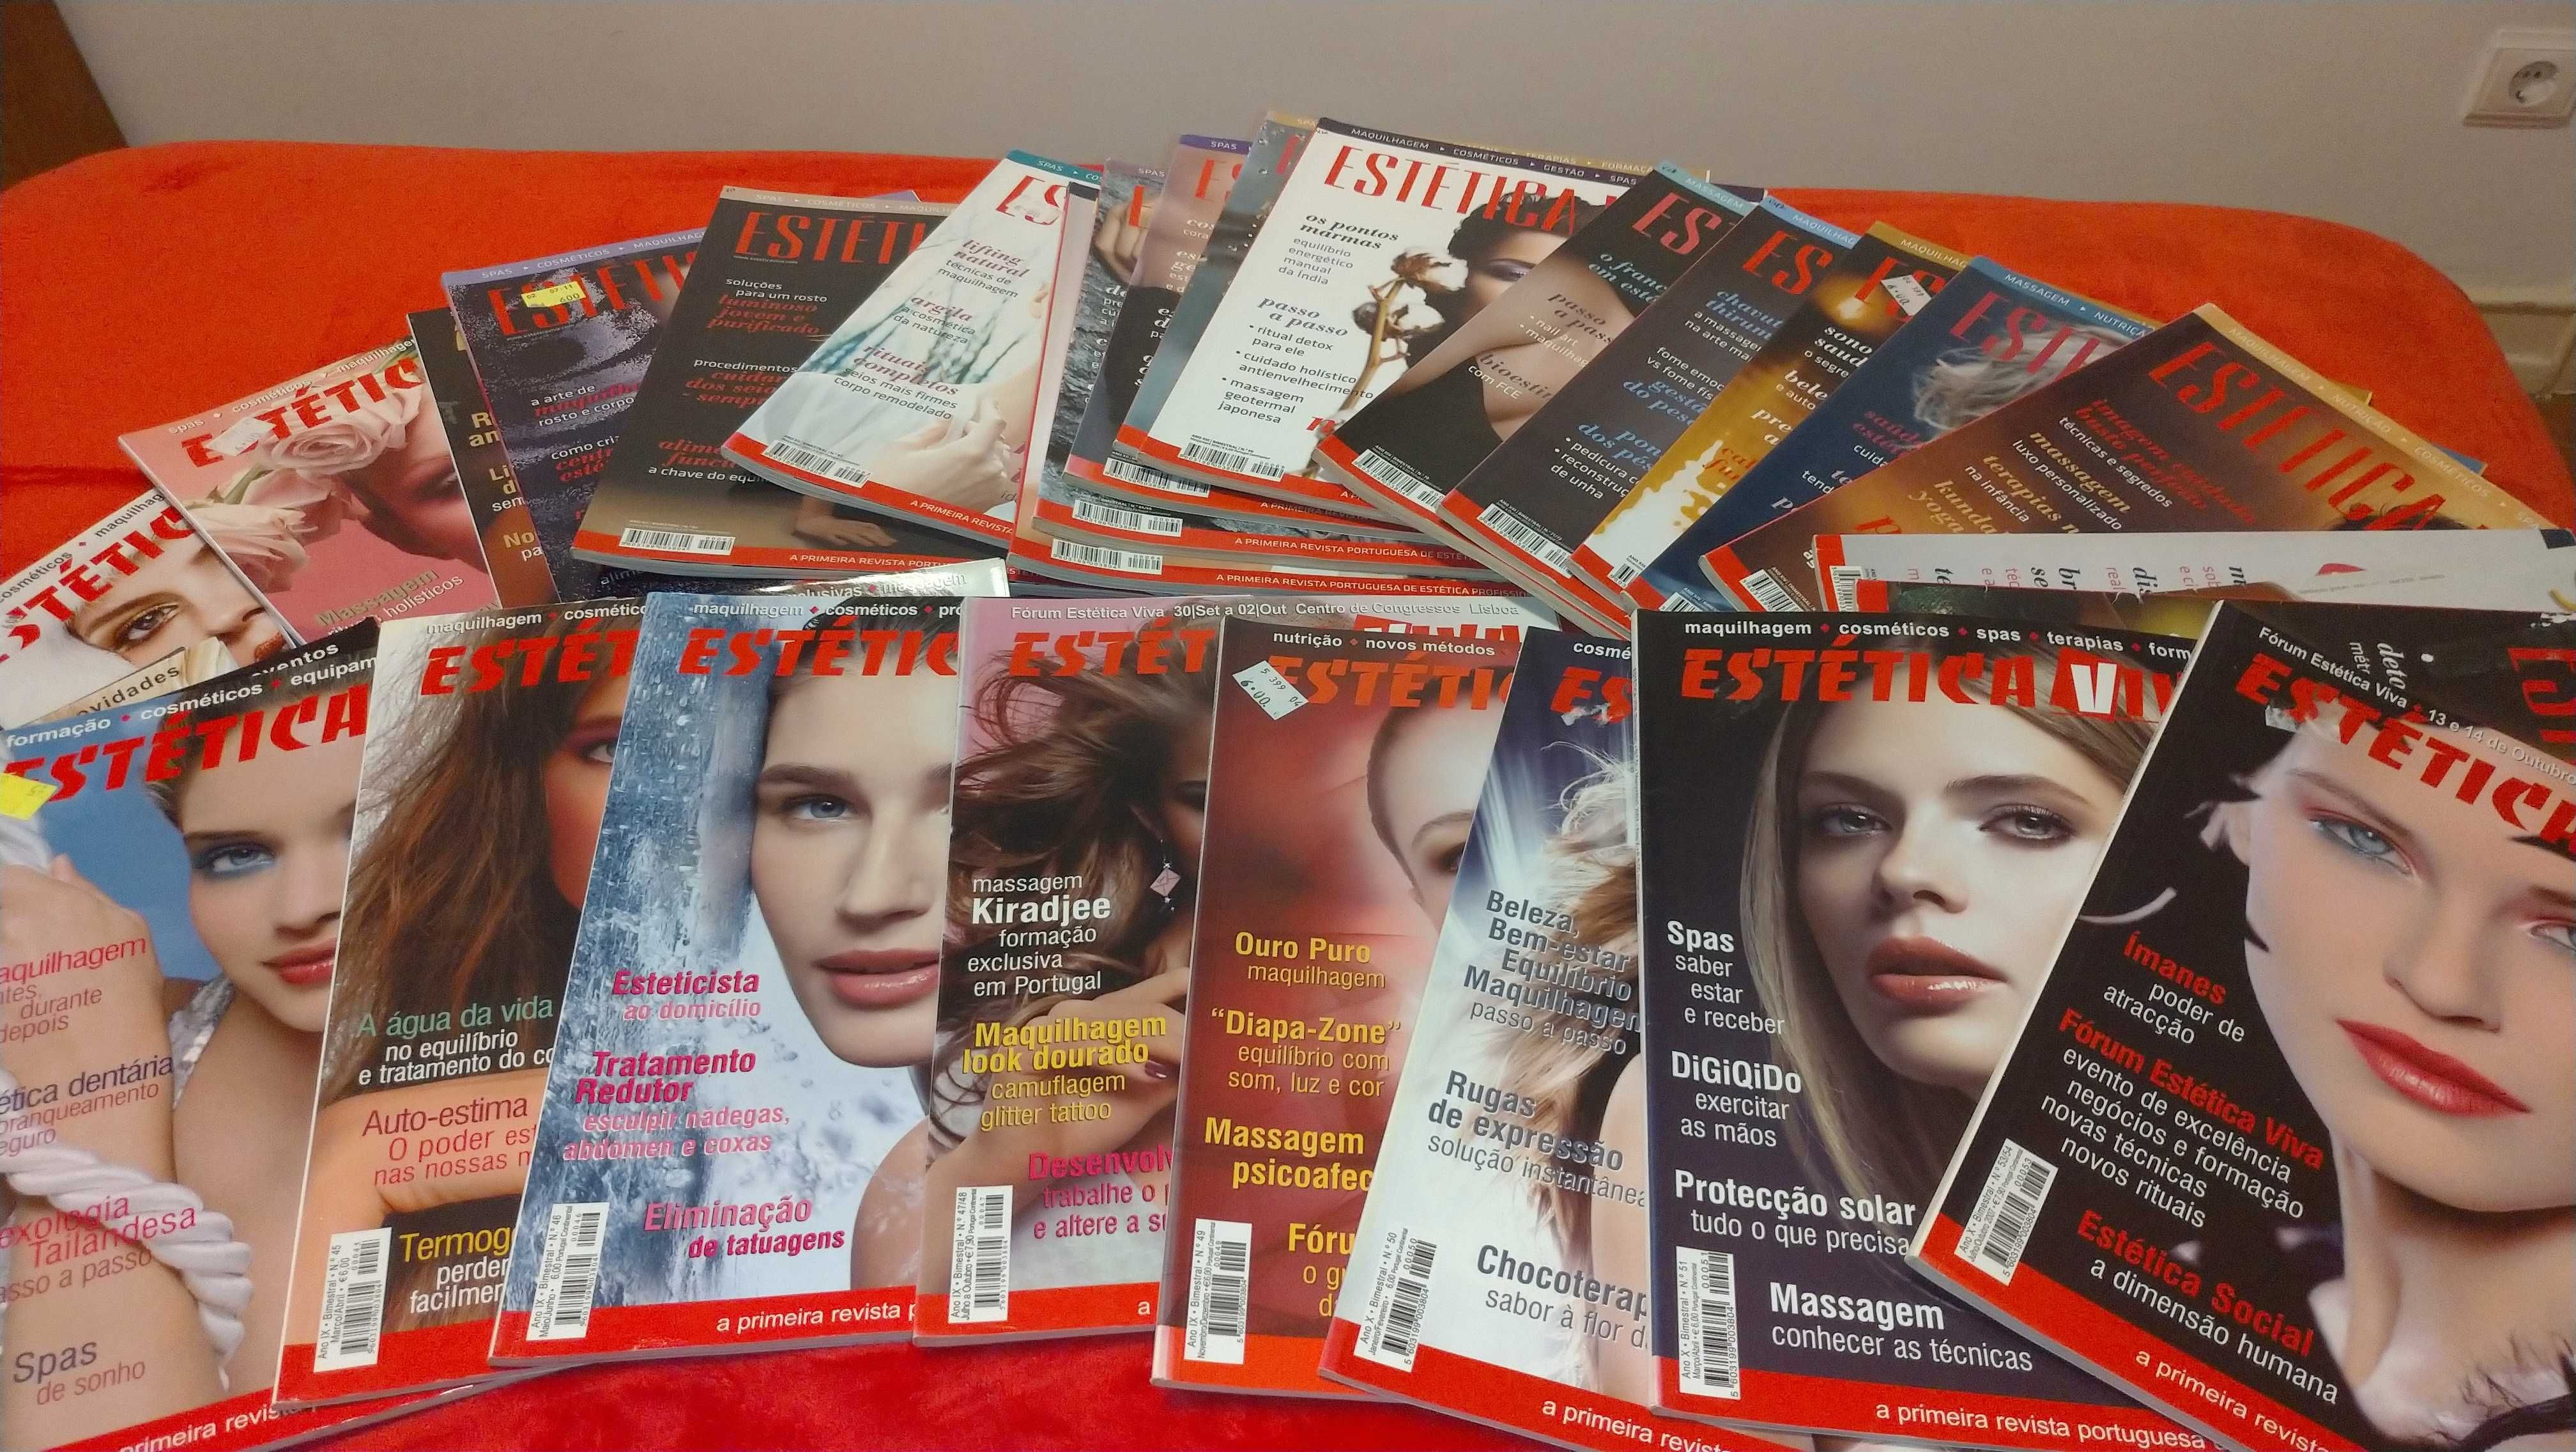 Lote de 40 revistas "Estética Viva"